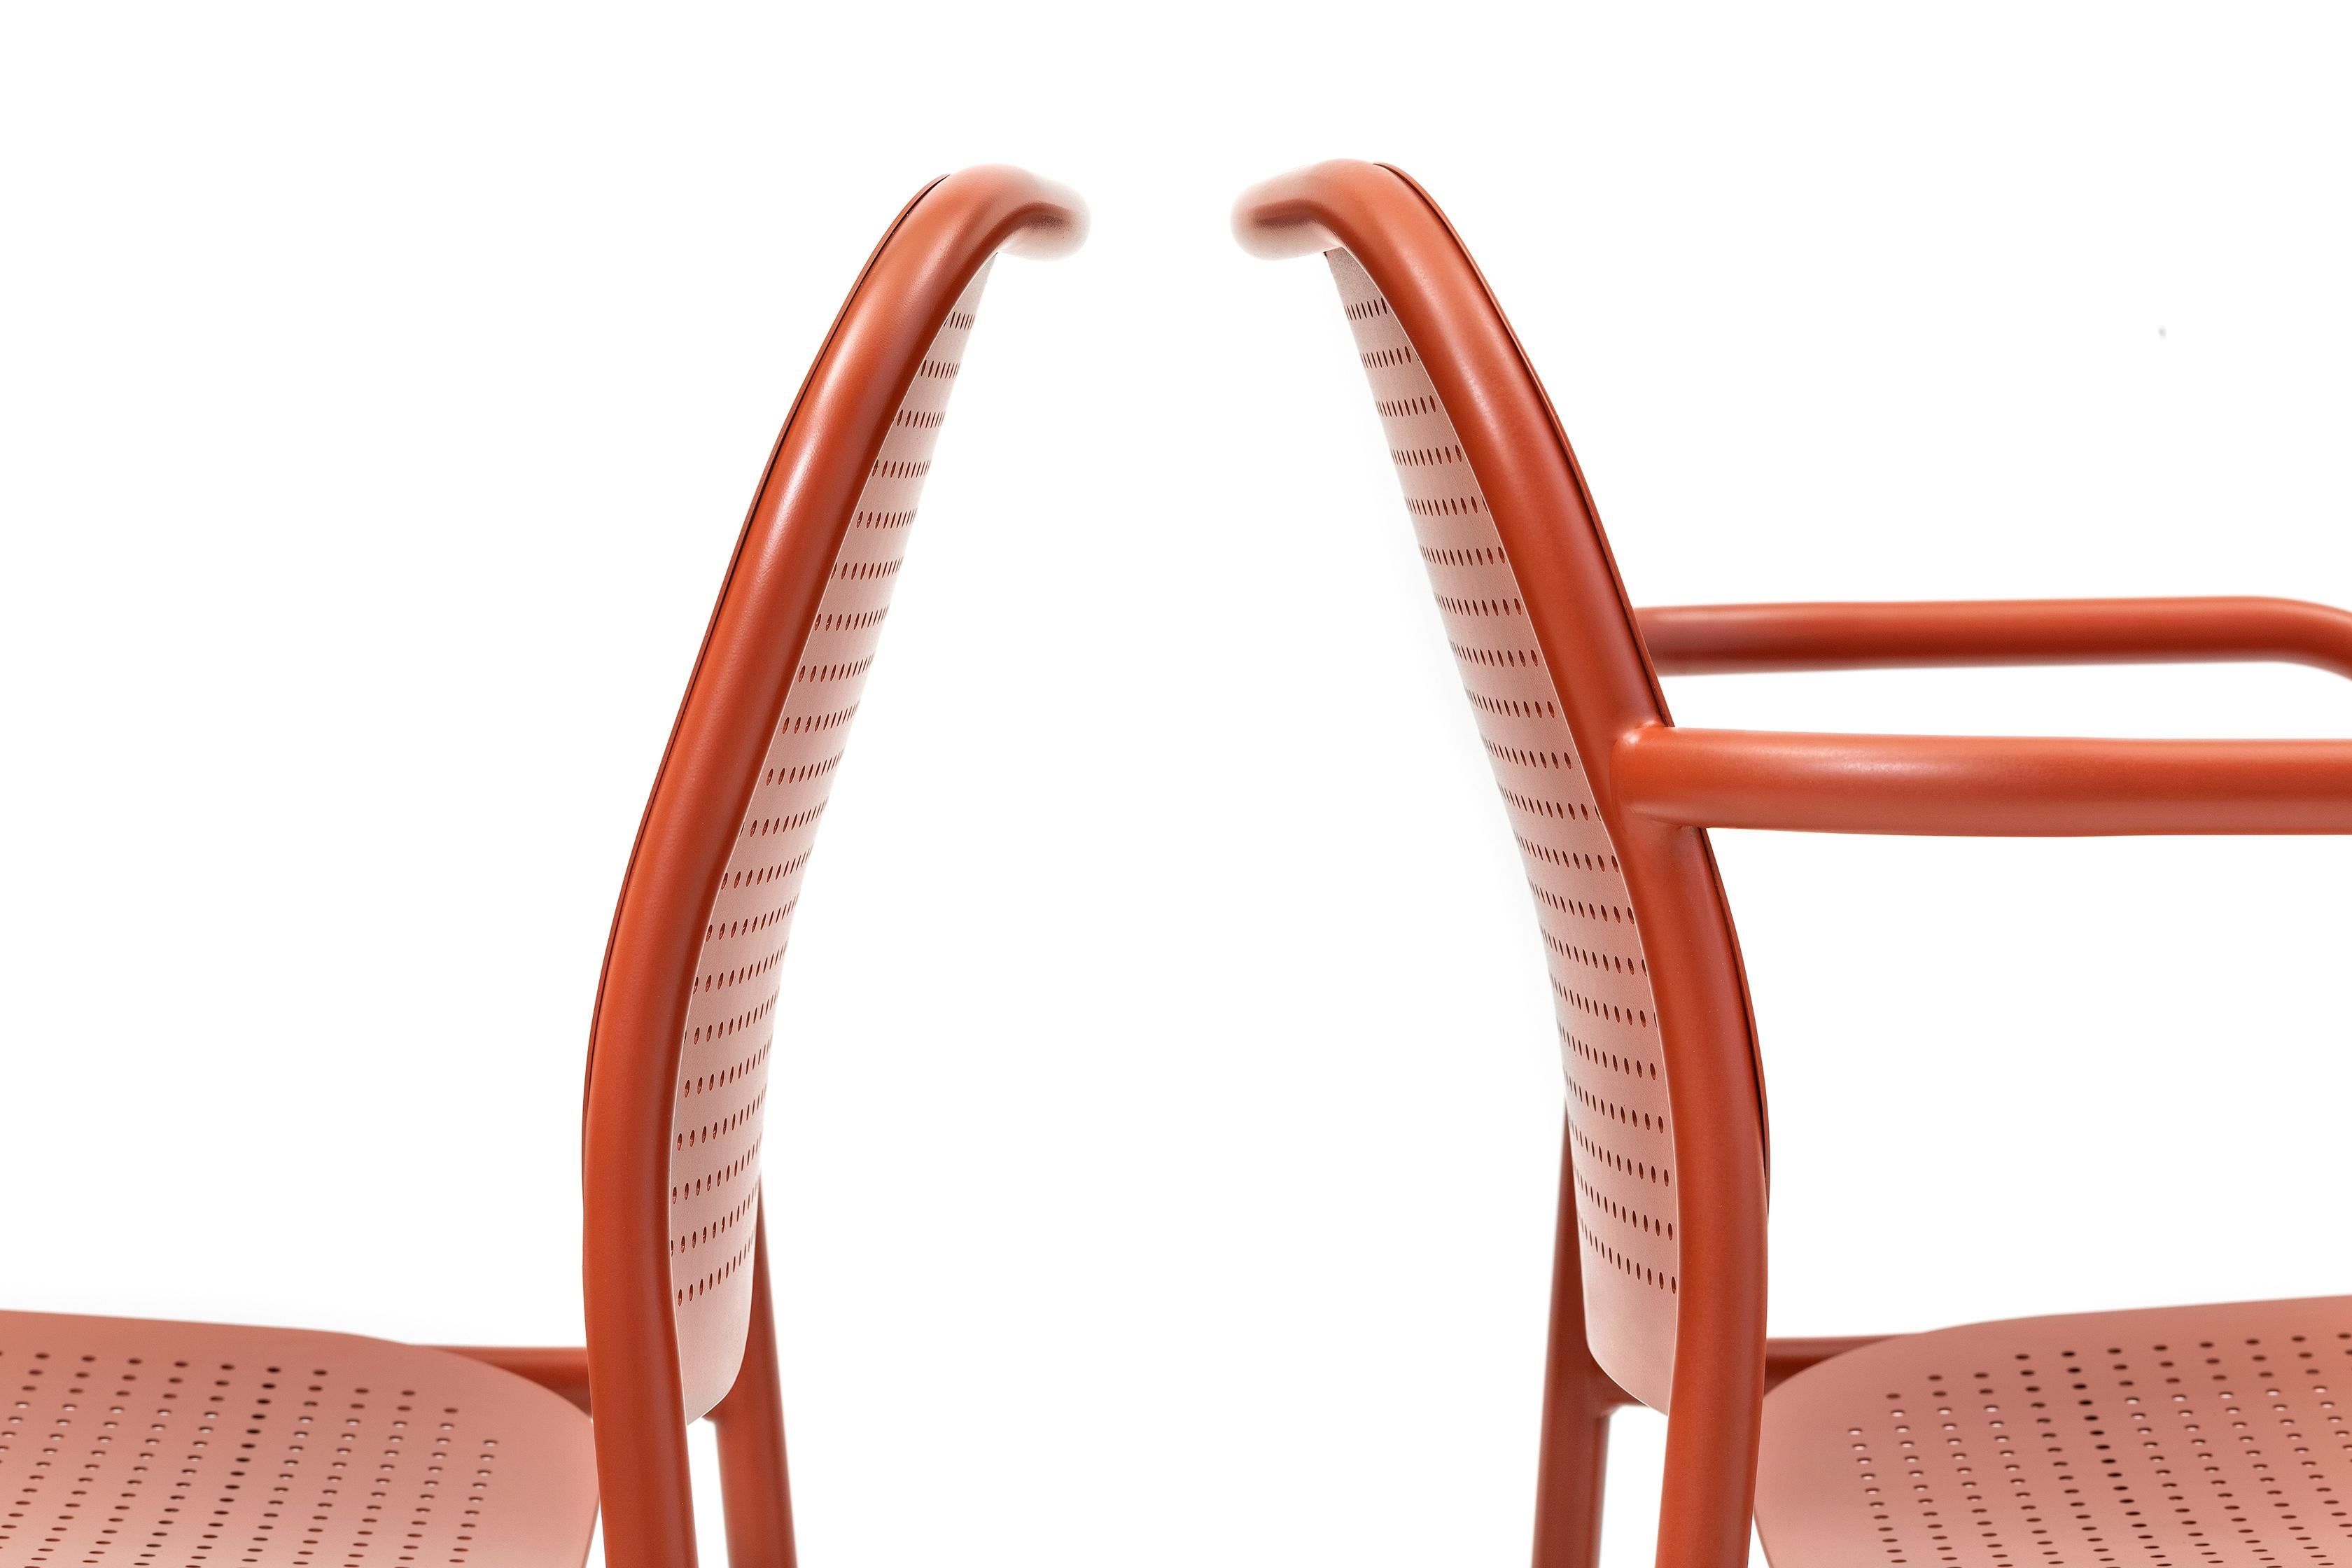 La collection Metis Dot comprend la chaise avec ou sans accoudoir, la version lounge avec ou sans accoudoir et le tabouret en deux hauteurs. Dans toutes ses variantes, la structure métallique tubulaire est complétée par l'assise et le dossier en